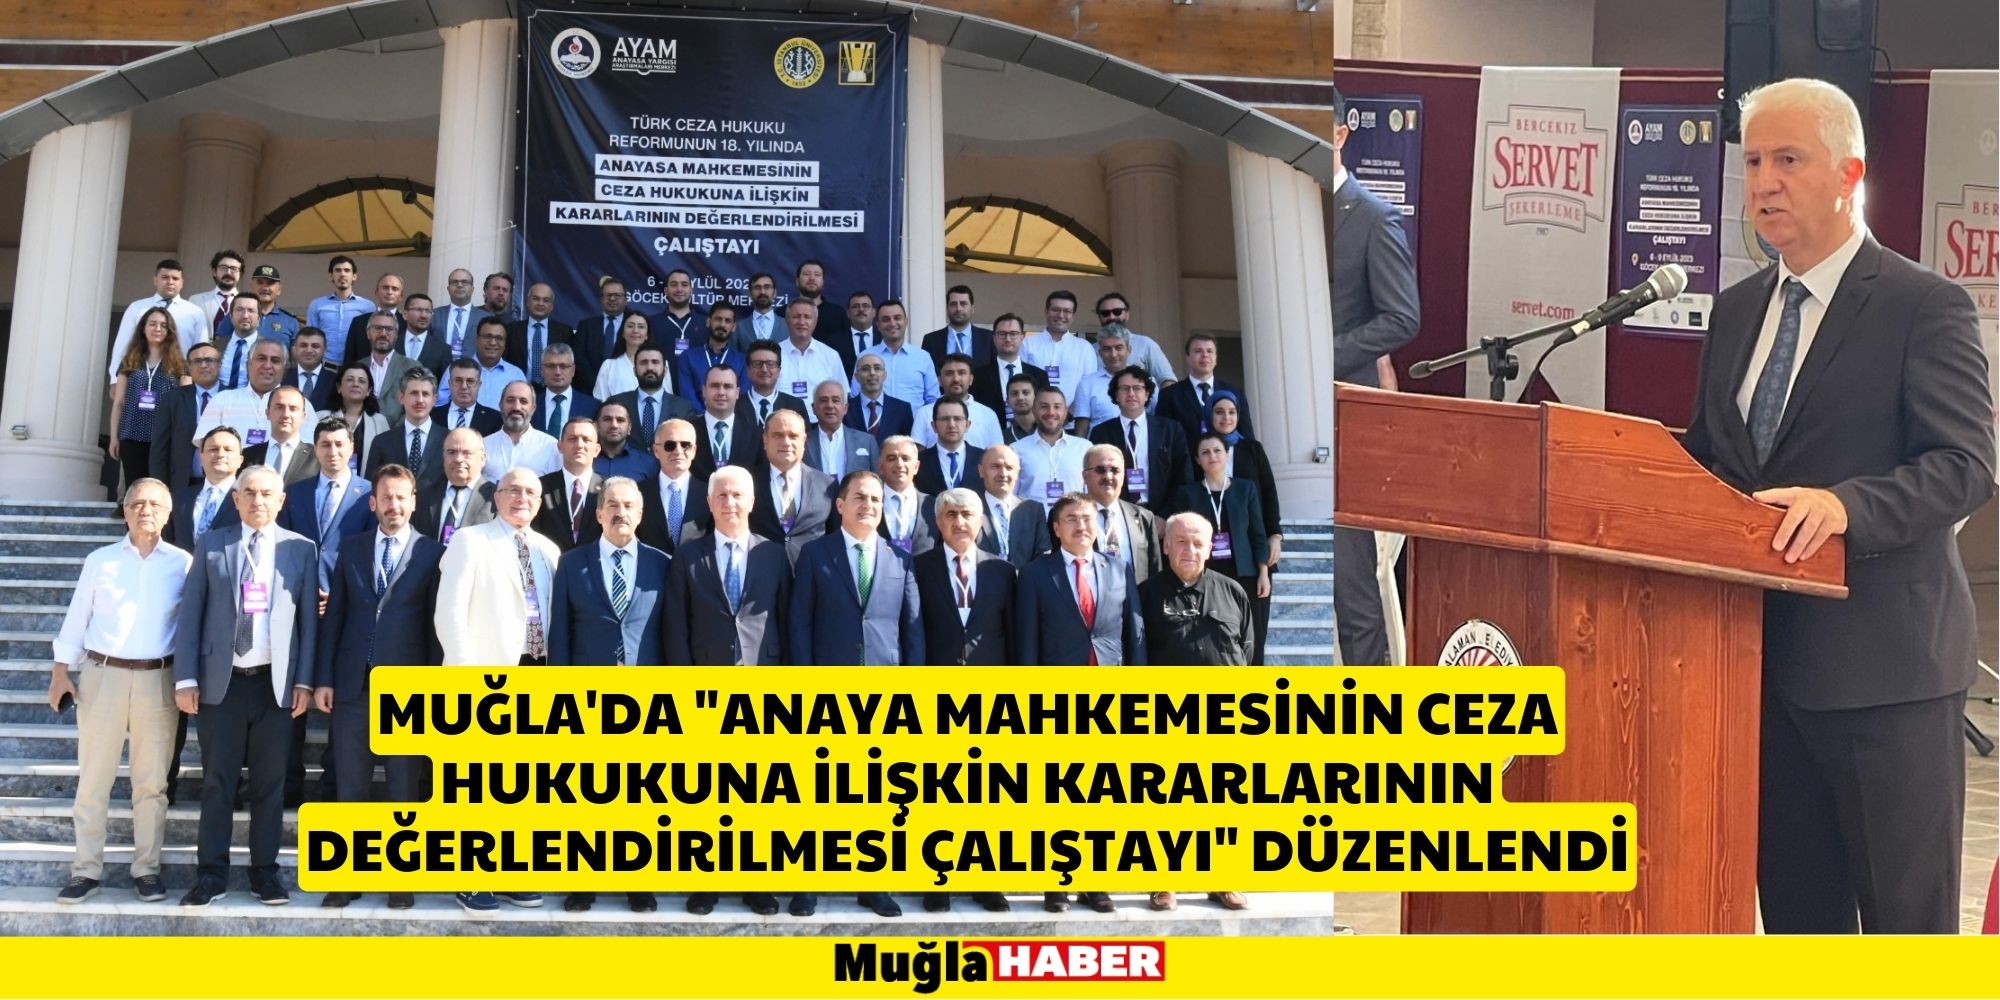 Muğla'da "Anaya Mahkemesinin Ceza Hukukuna İlişkin Kararlarının Değerlendirilmesi Çalıştayı" düzenlendi